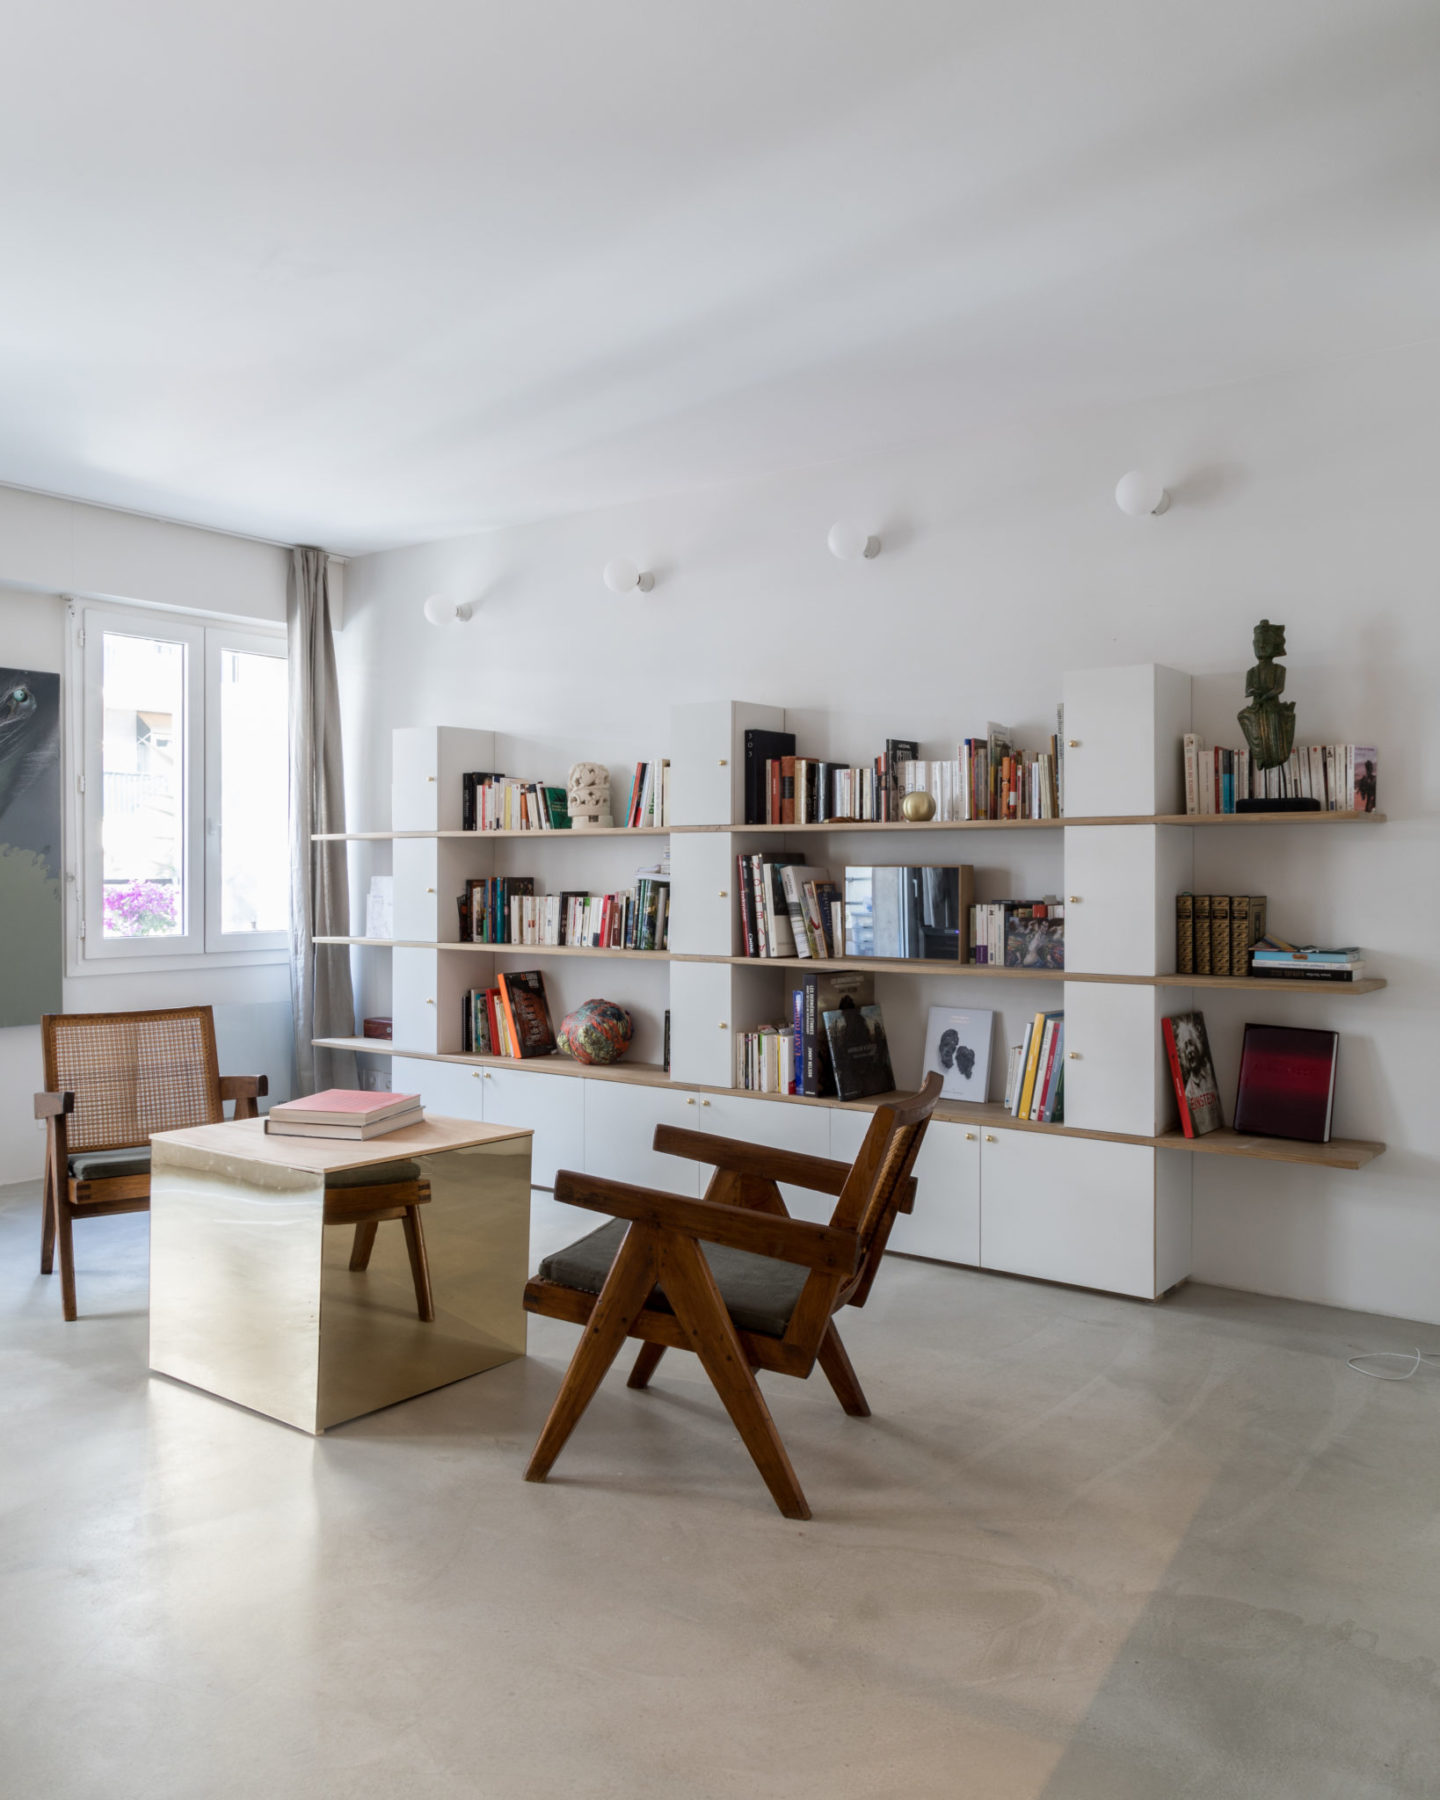 Séjour - Fauteuils Pierre Jeanneret, Le Corbusier. Sol ciment vernis, table cube miroir bronze